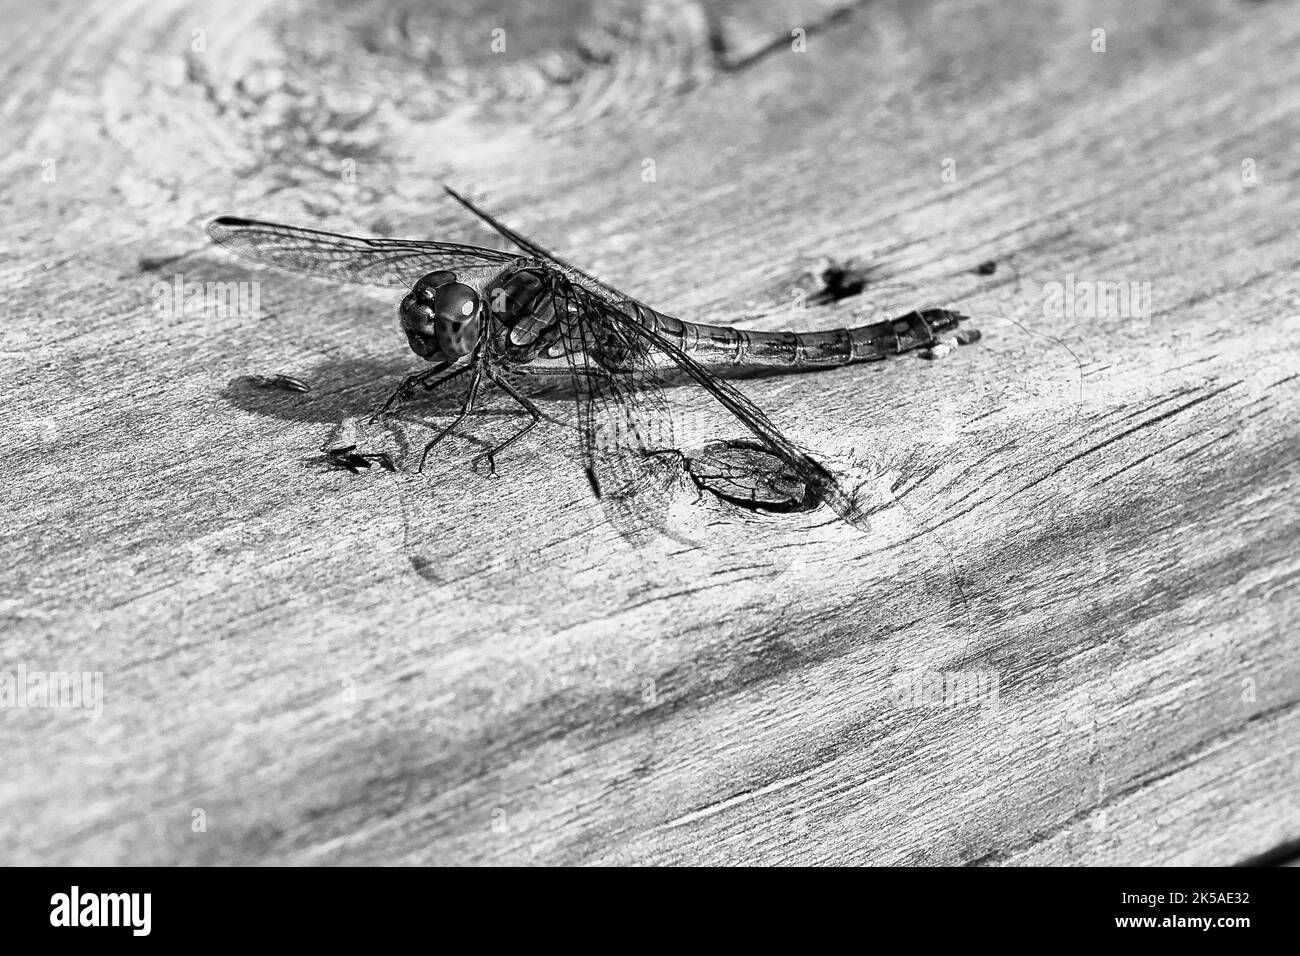 Libellule en noir et blanc, avec ailes étalées sur une rambarde en bois d'une terrasse en Suède. Gros plan d'animaux de la nature Banque D'Images